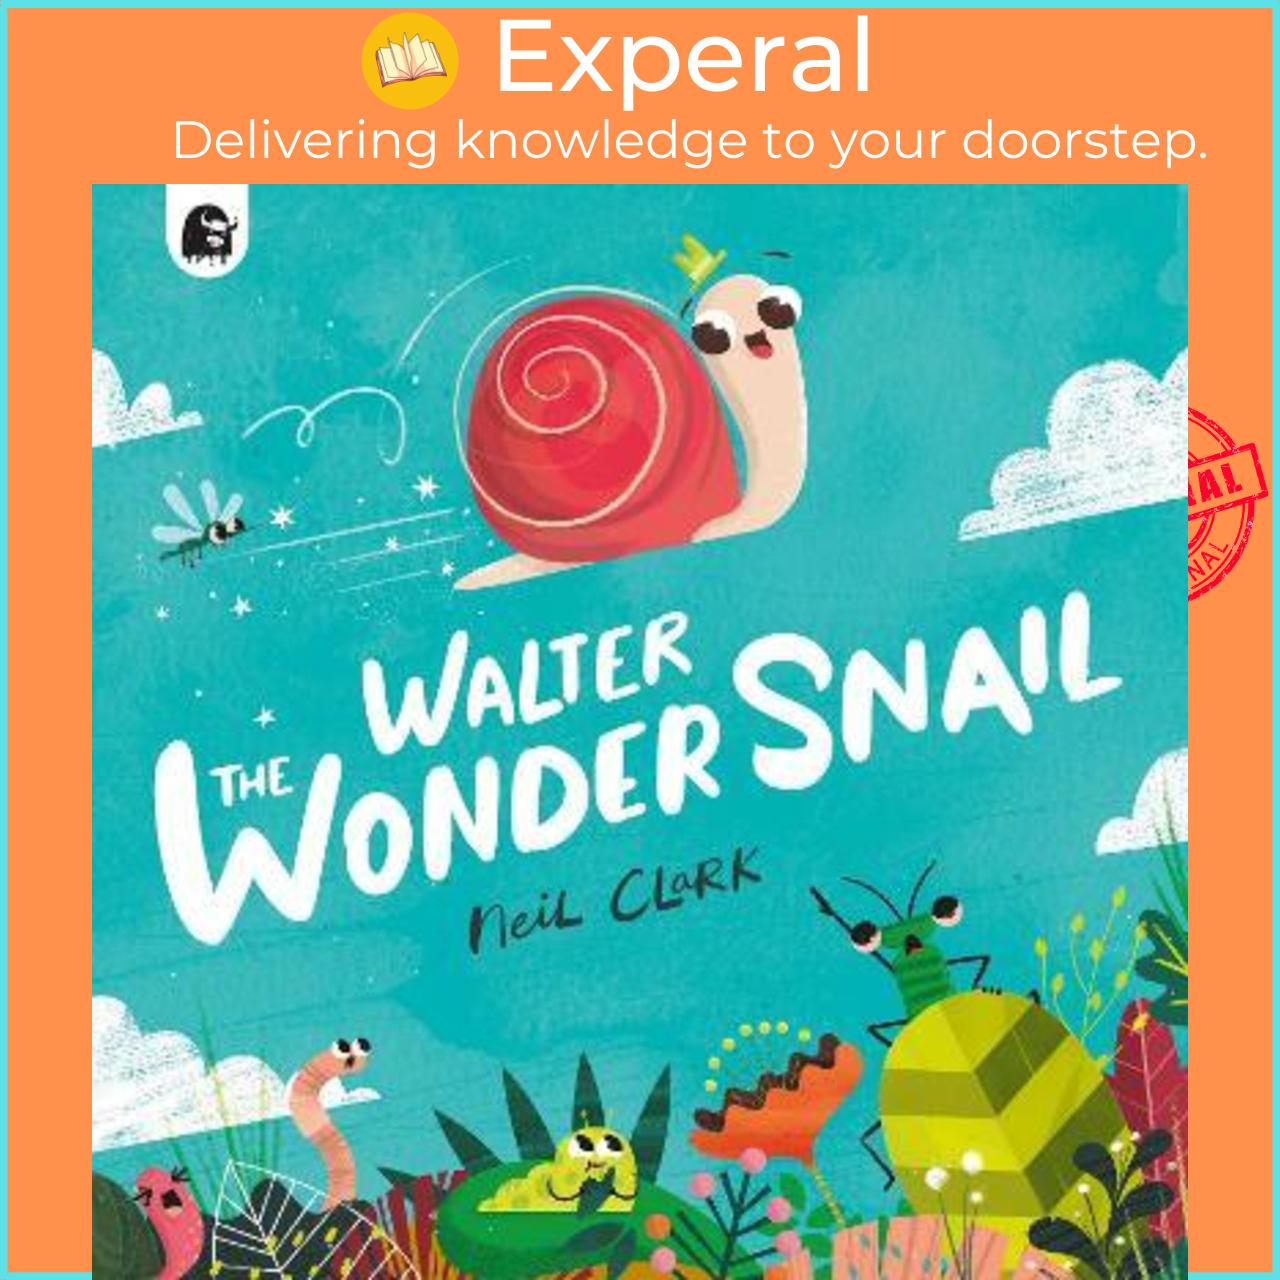 Sách - Walter The Wonder Snail by Neil Clark (UK edition, paperback)